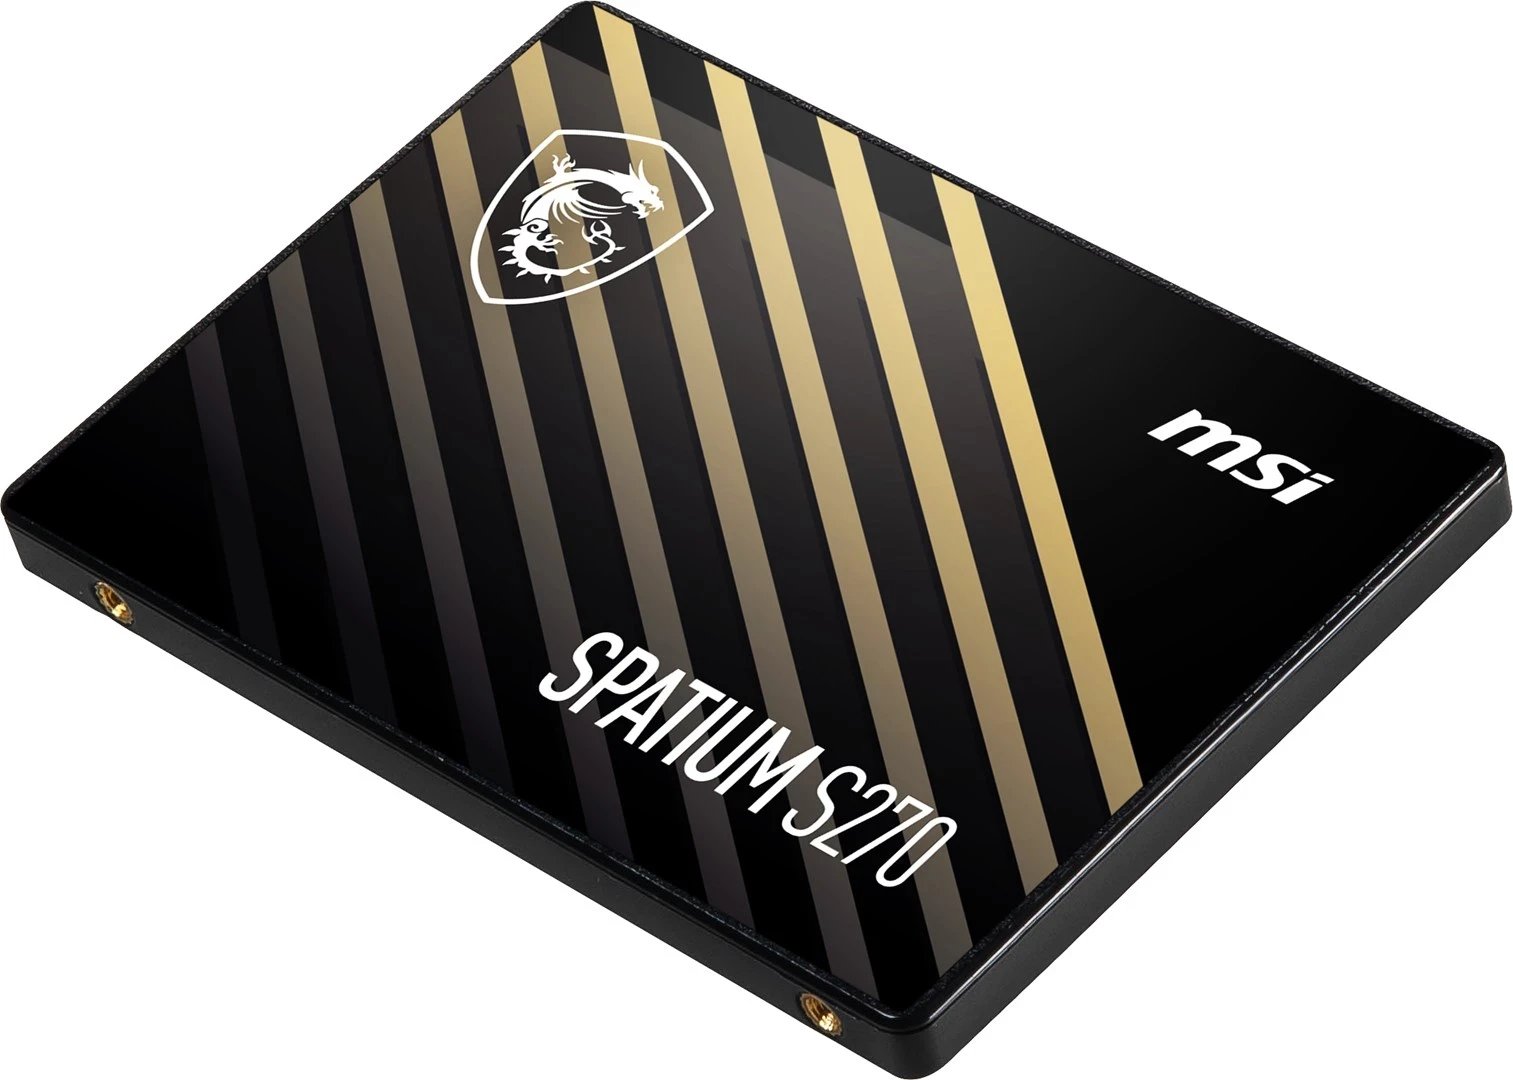 SSD MSI SPATIUM S270, 480GB, SATA 2.5"